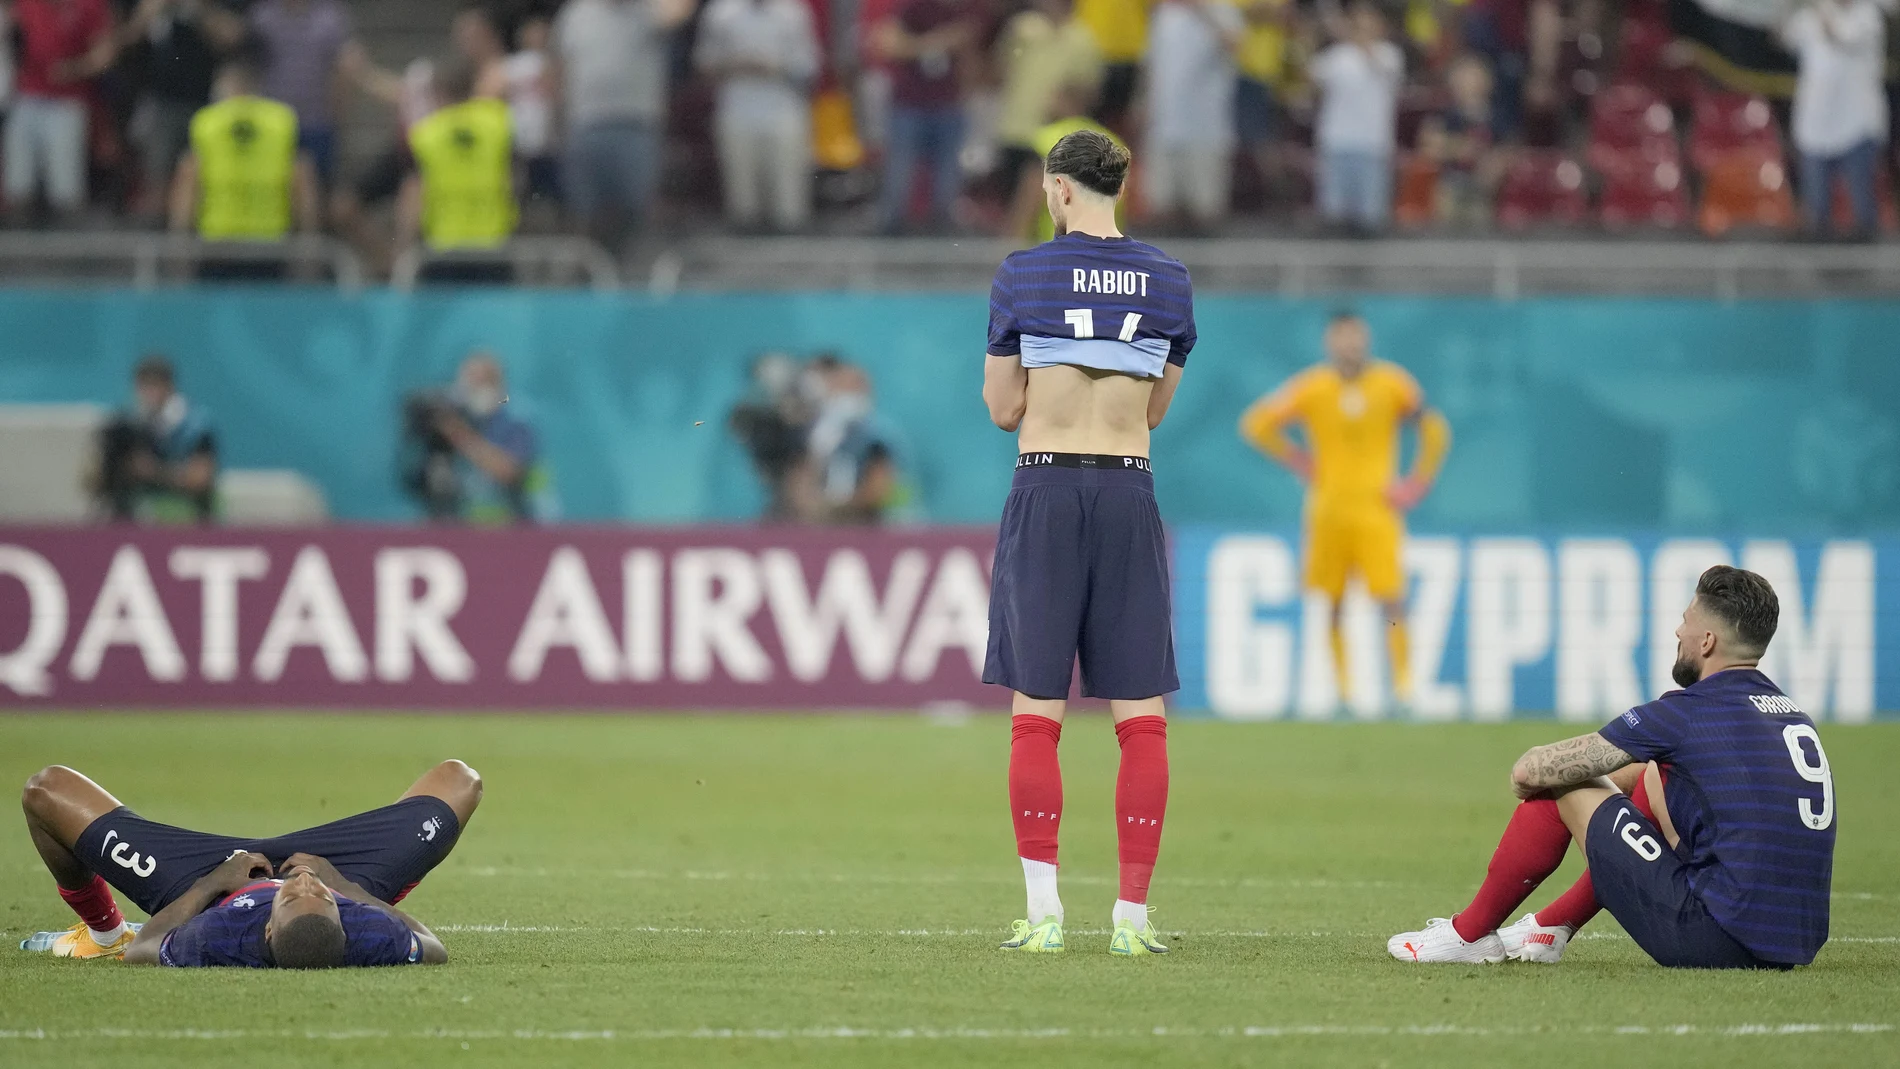 Francia fue eliminada por Suiza en los lanzamientos de penalti.